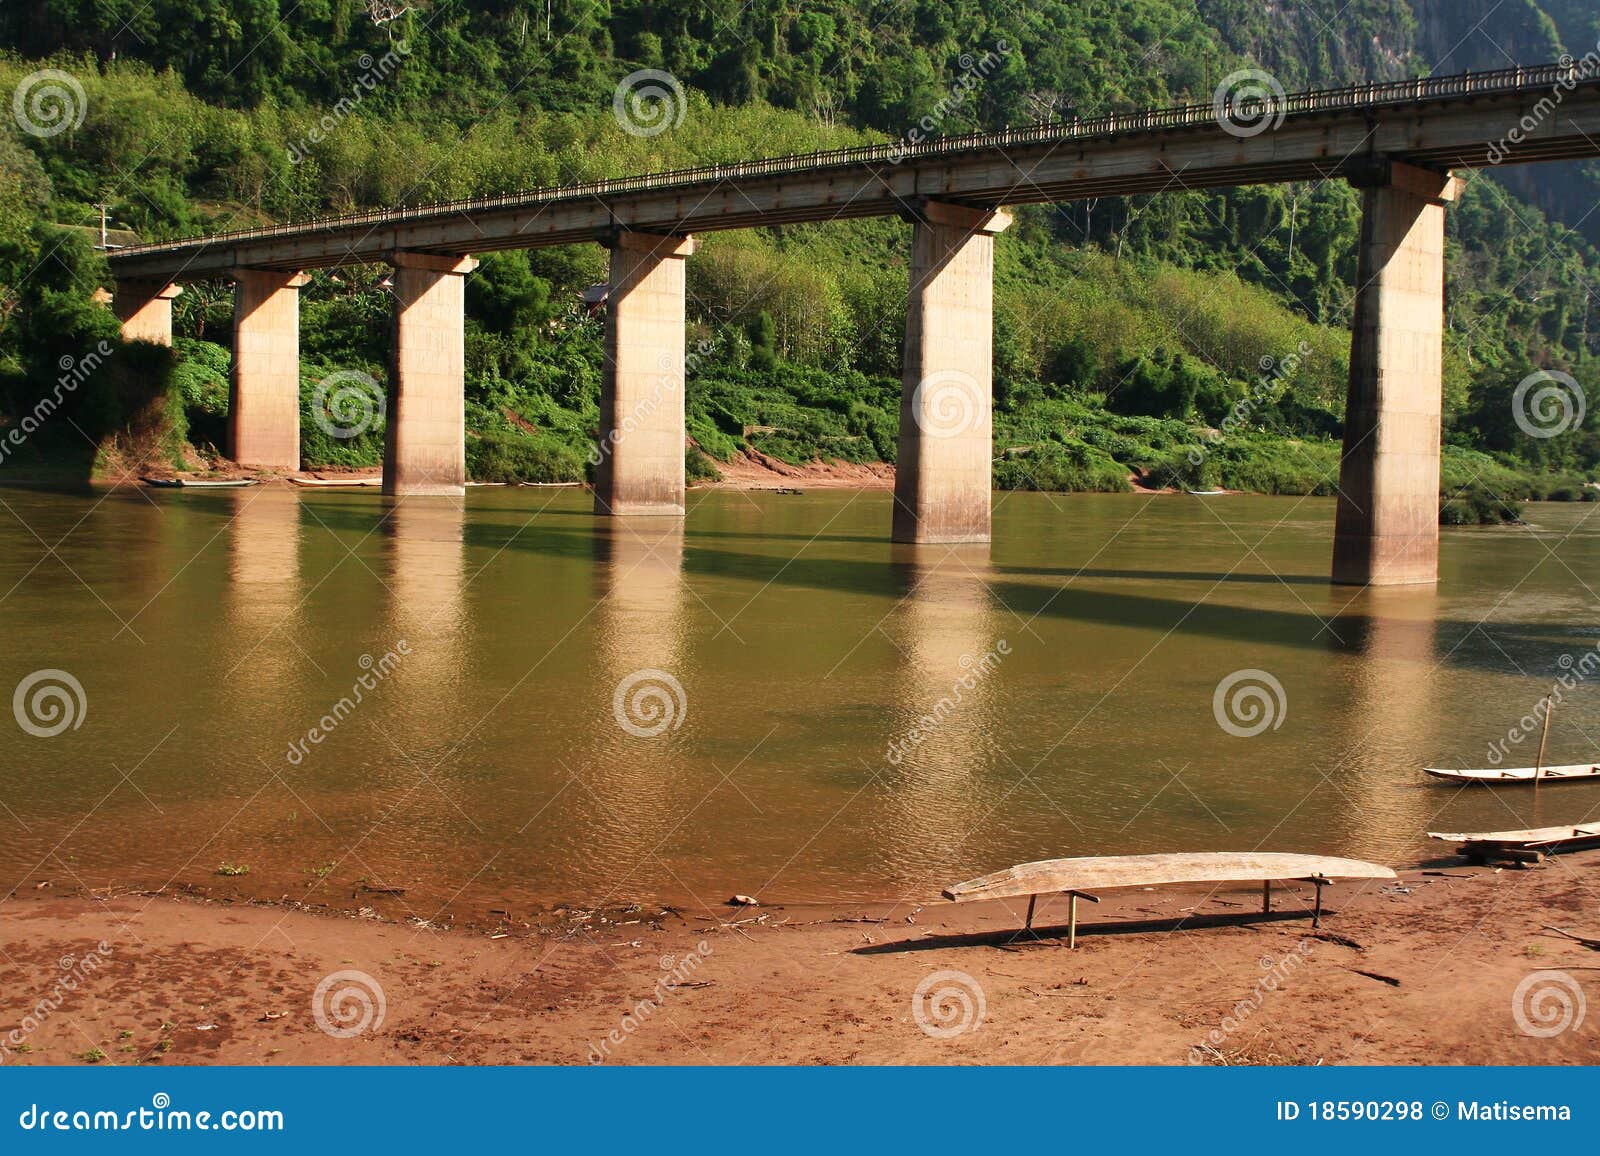 nam-ou bridge at nhong-kiew